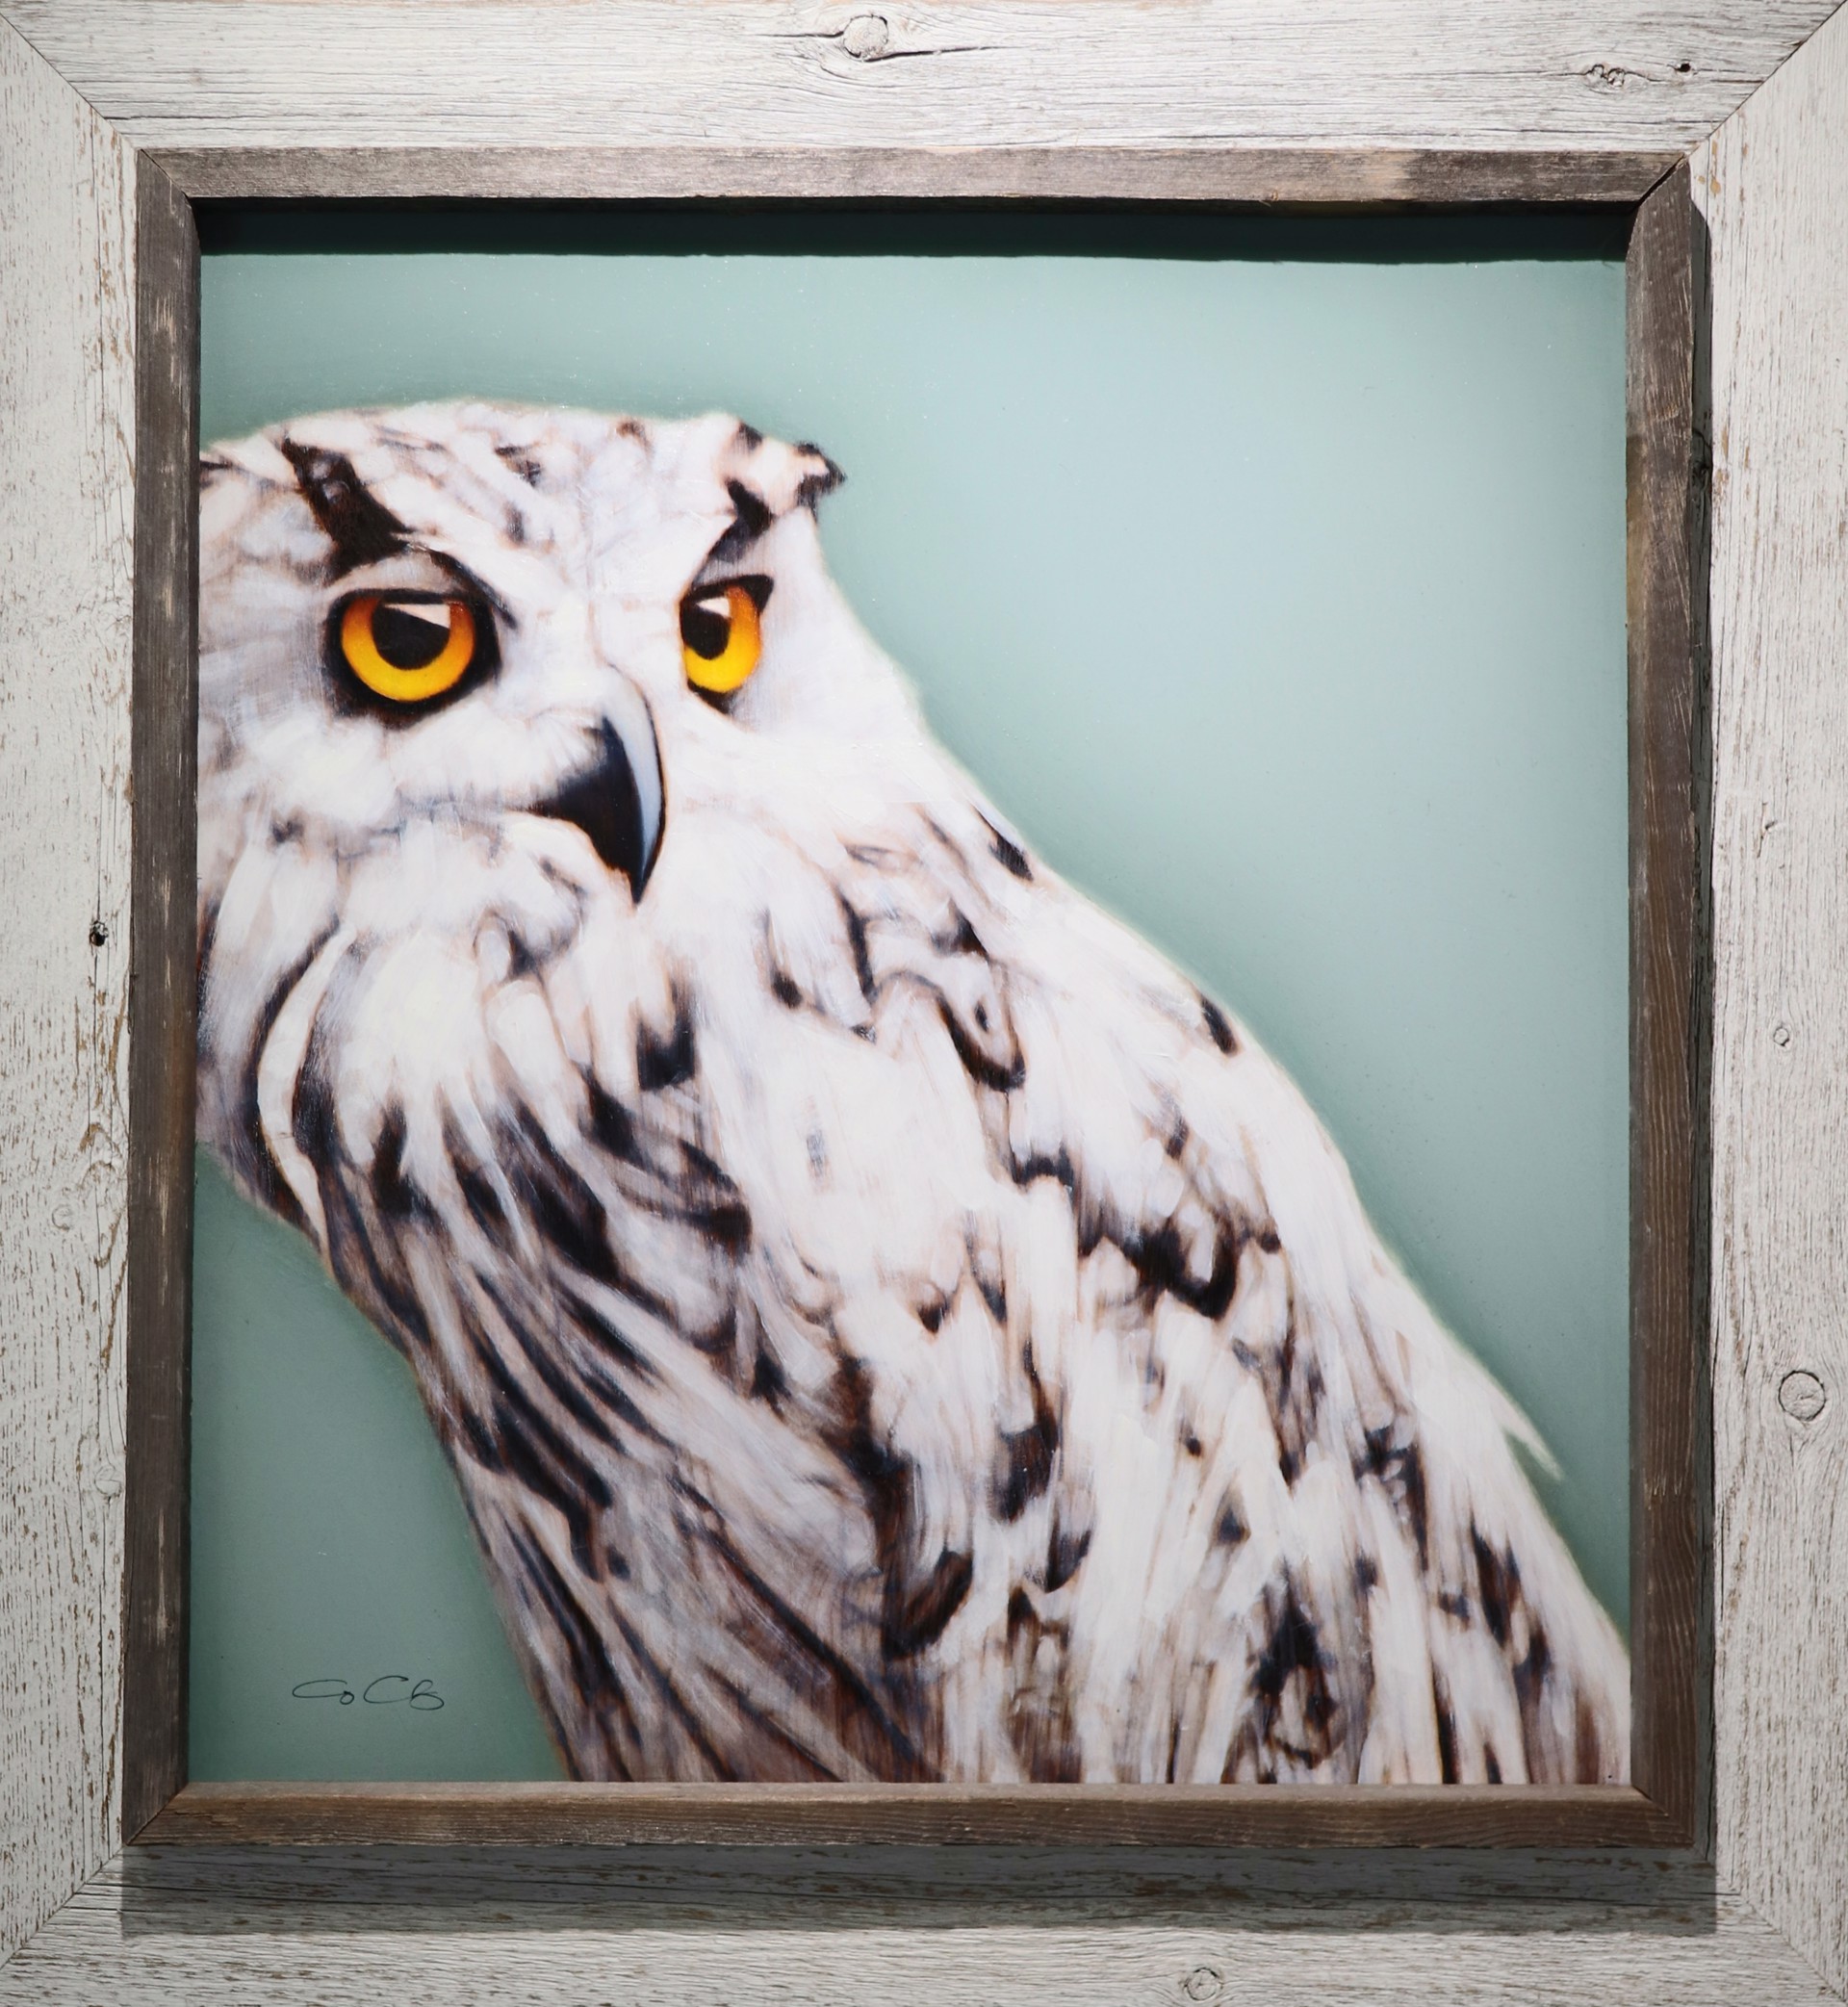 Owl by George Charriez